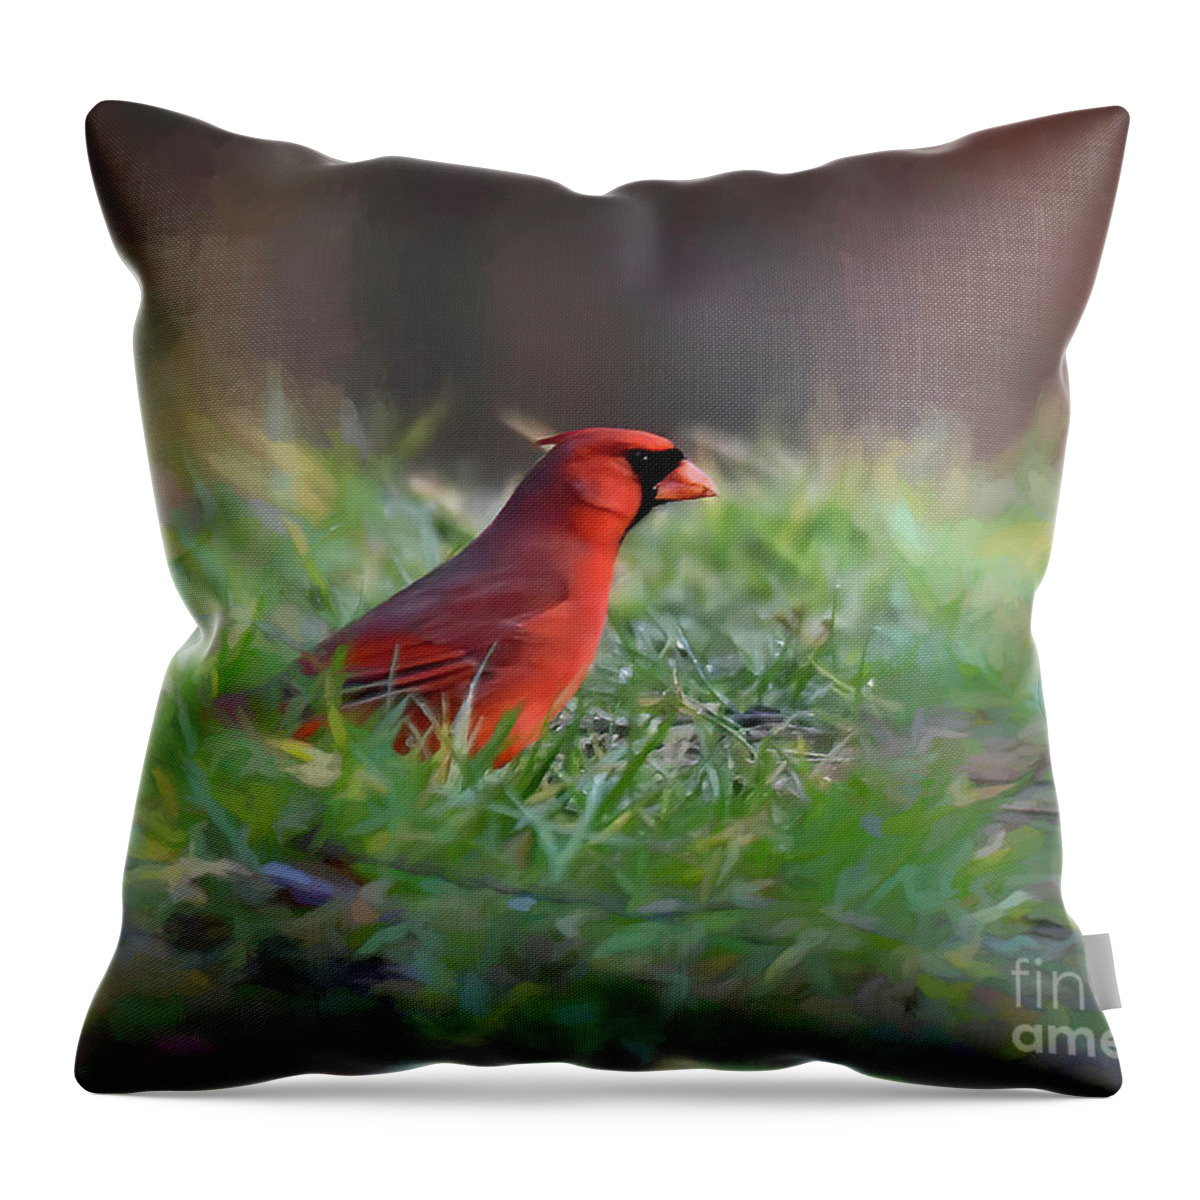 Bird Art Throw Pillow featuring the photograph Bird Art - Cardinal In the Grass by Kerri Farley